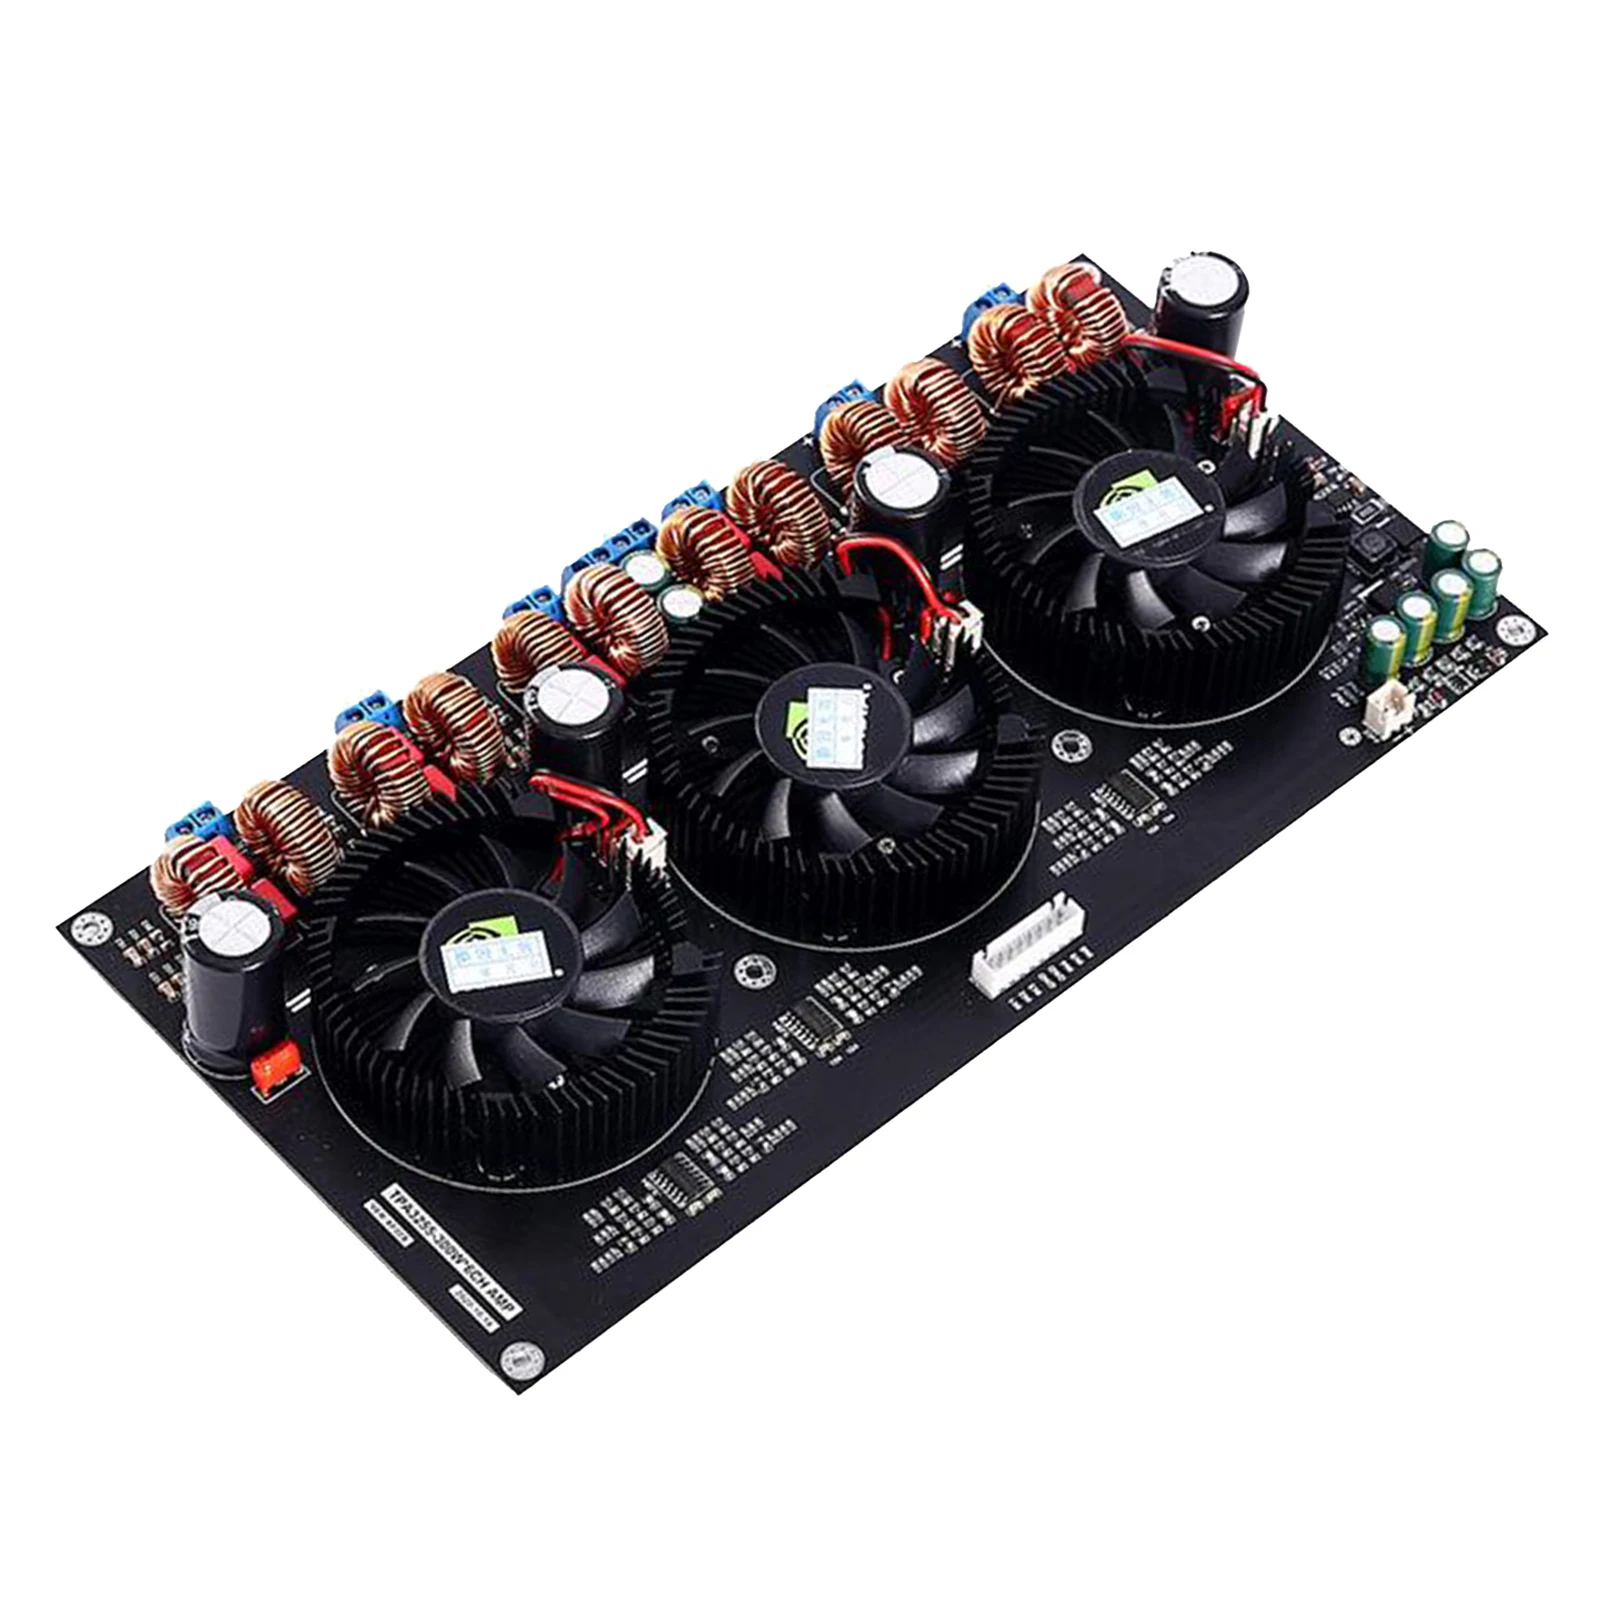 TPA3255 High Power Amplifier Board 6Channel DC24-48V 300W*6 & 3 Fan Design,